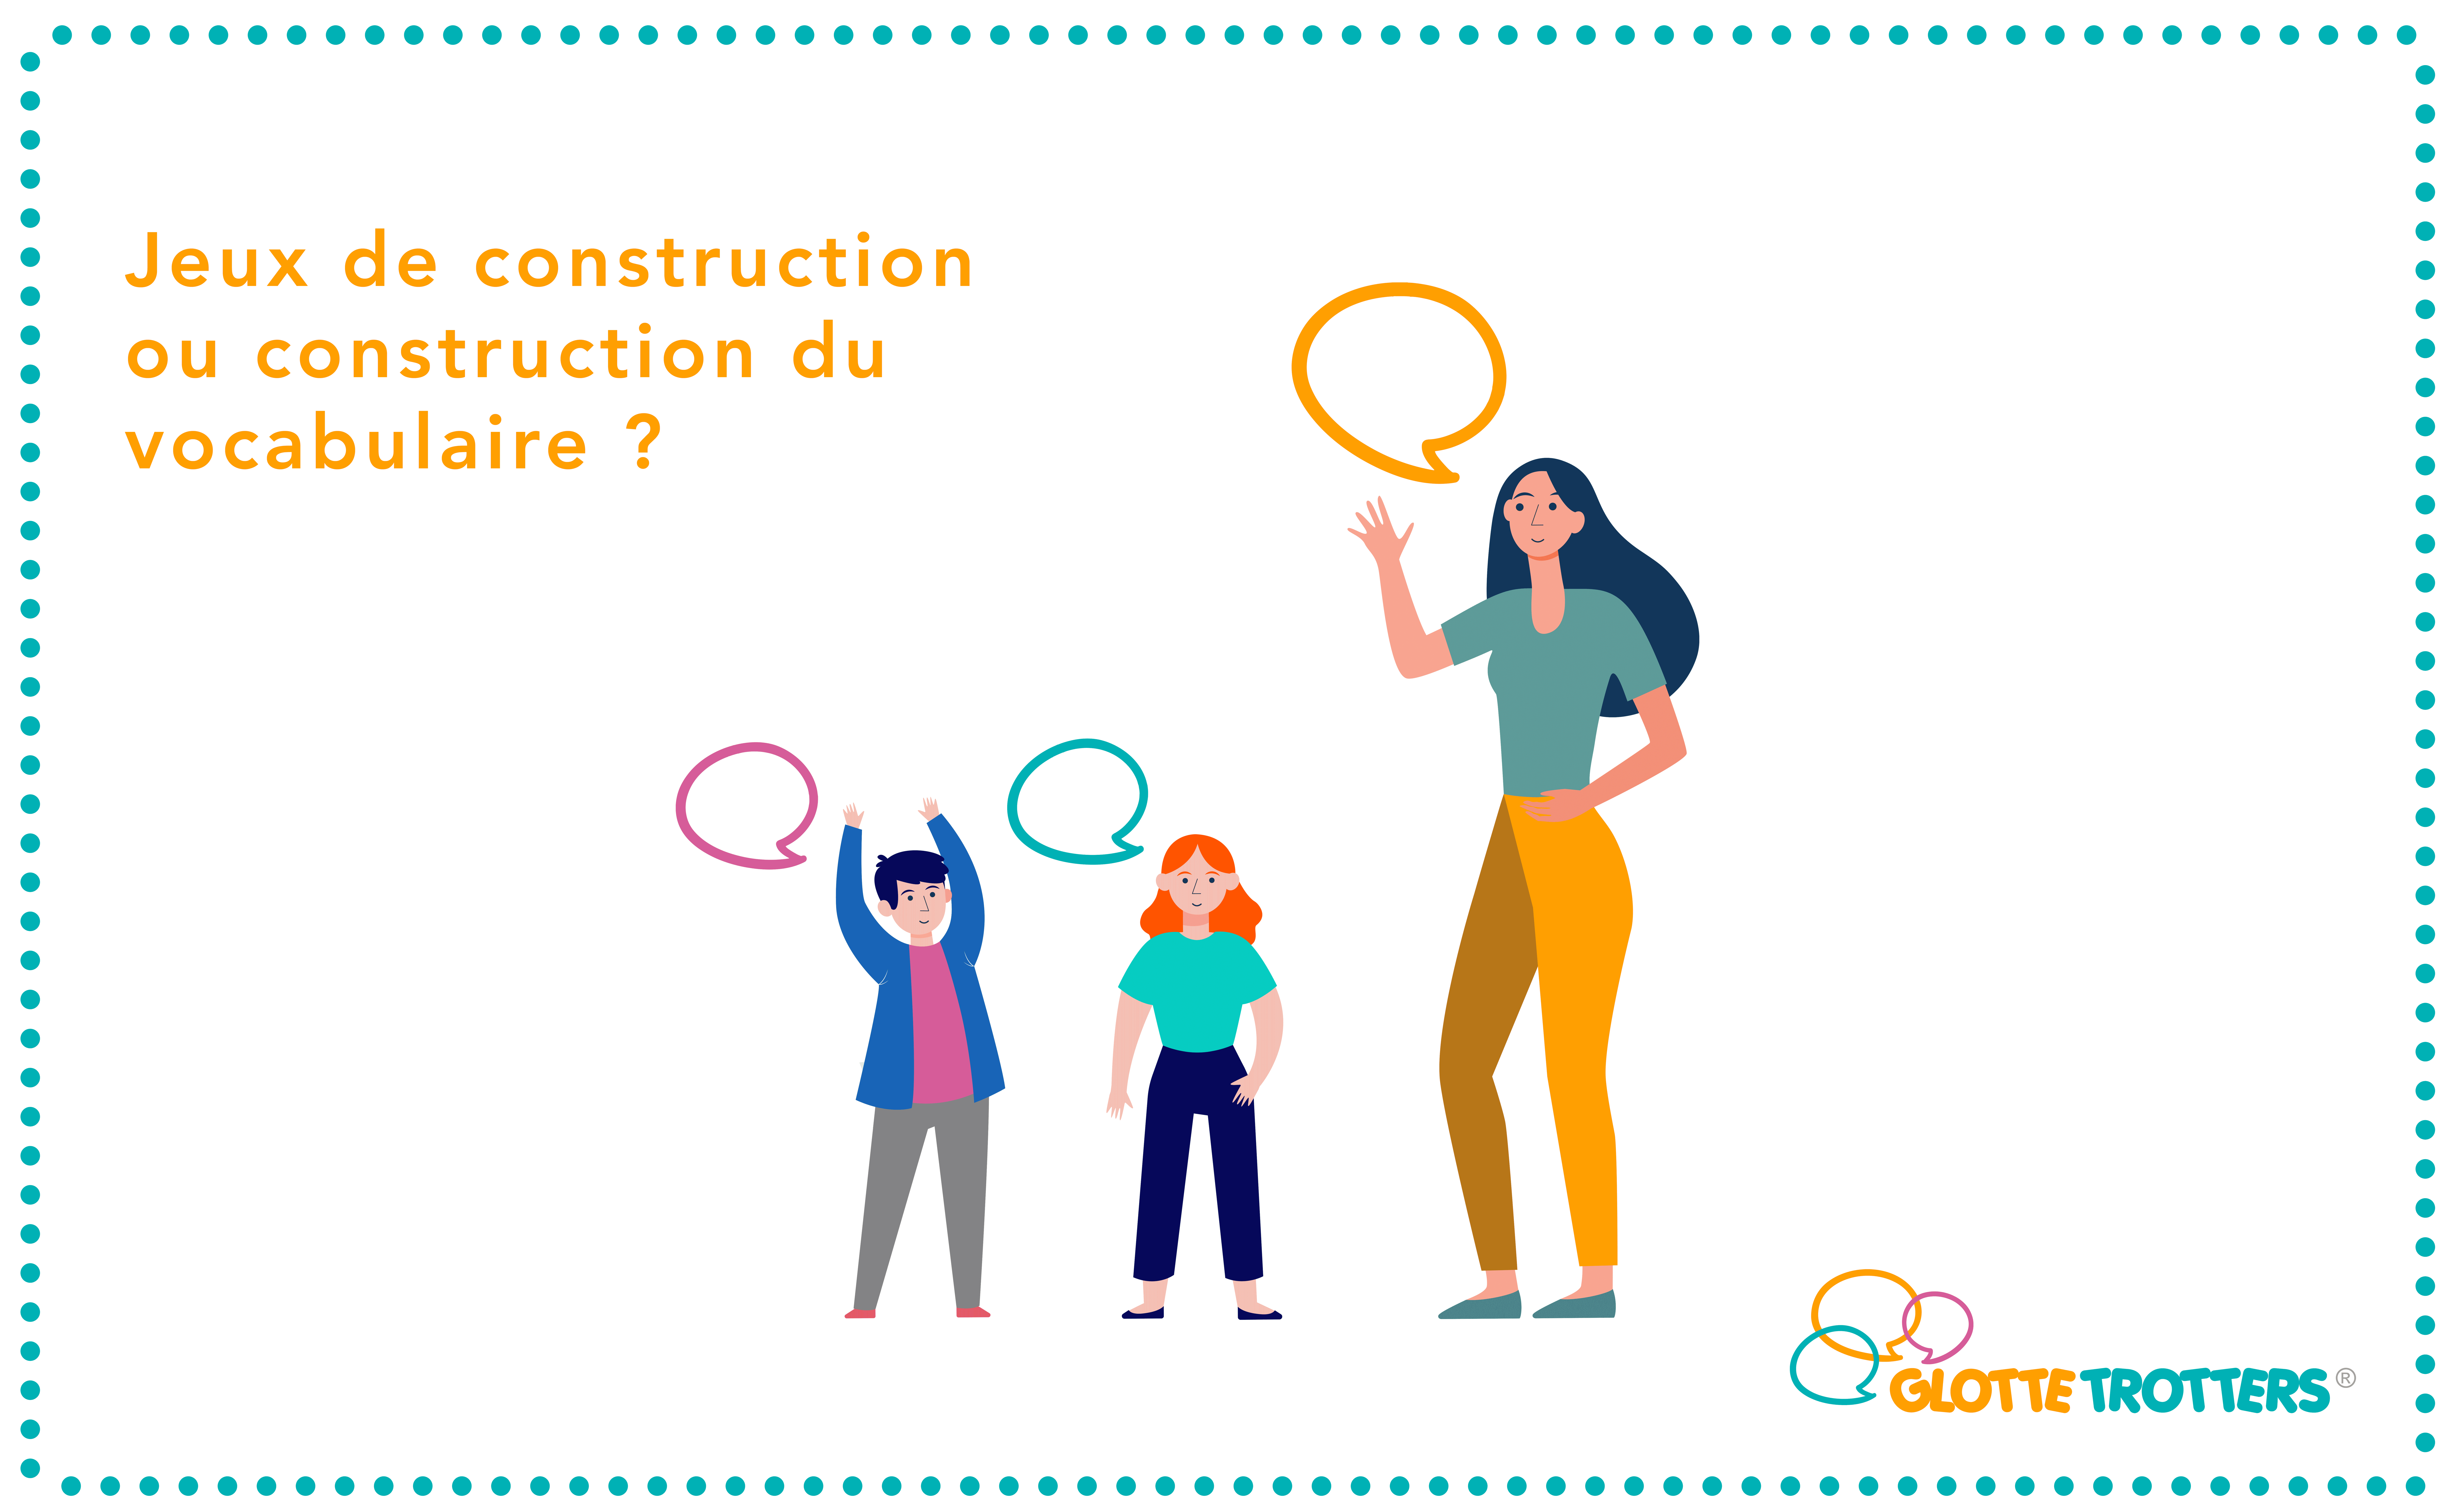 Jeux construction ou construction vocabulaire ?